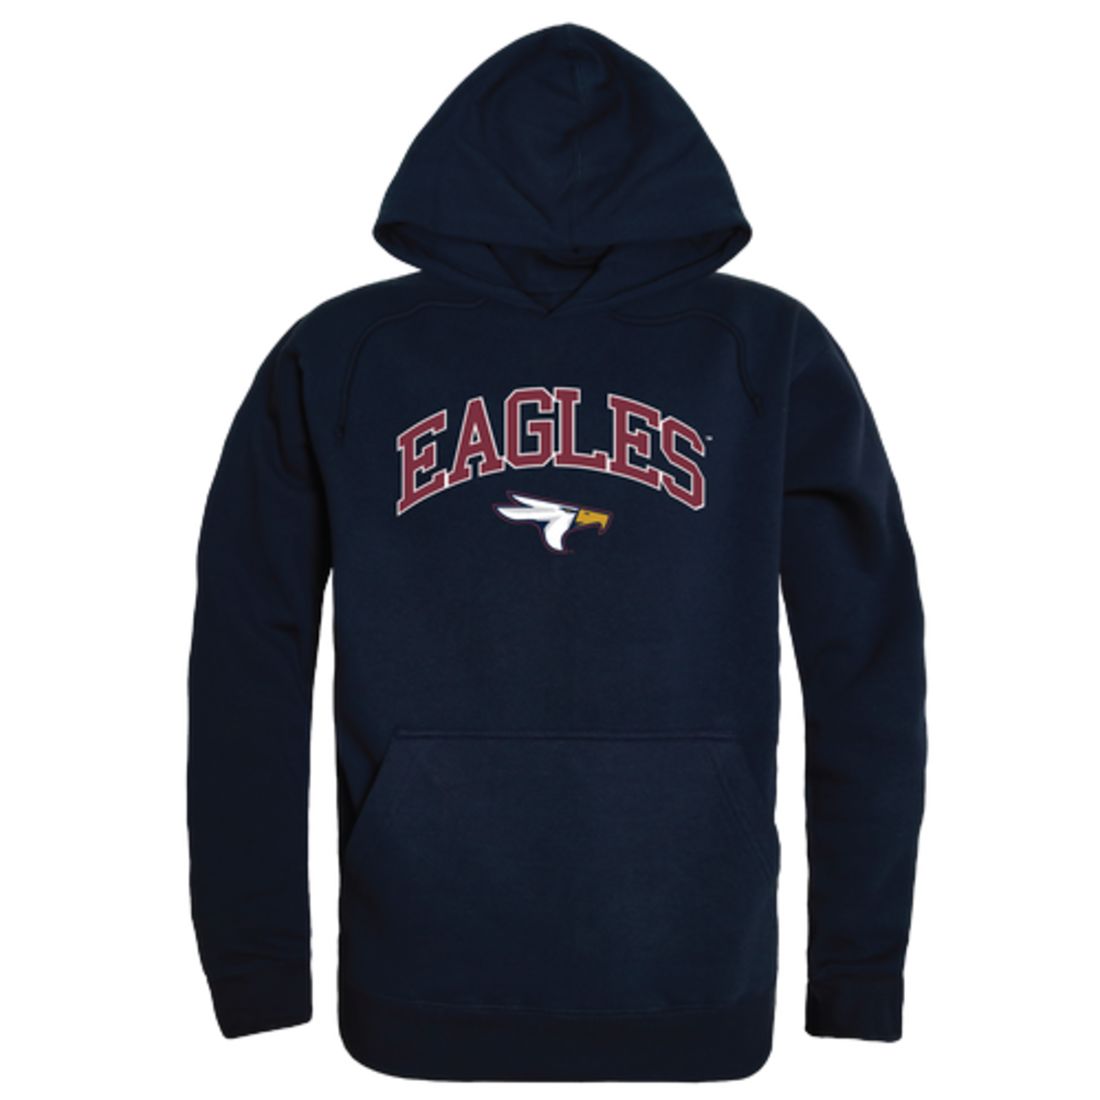 Texas-A&M-University-Texarkana-Eagles-Campus-Fleece-Hoodie-Sweatshirts